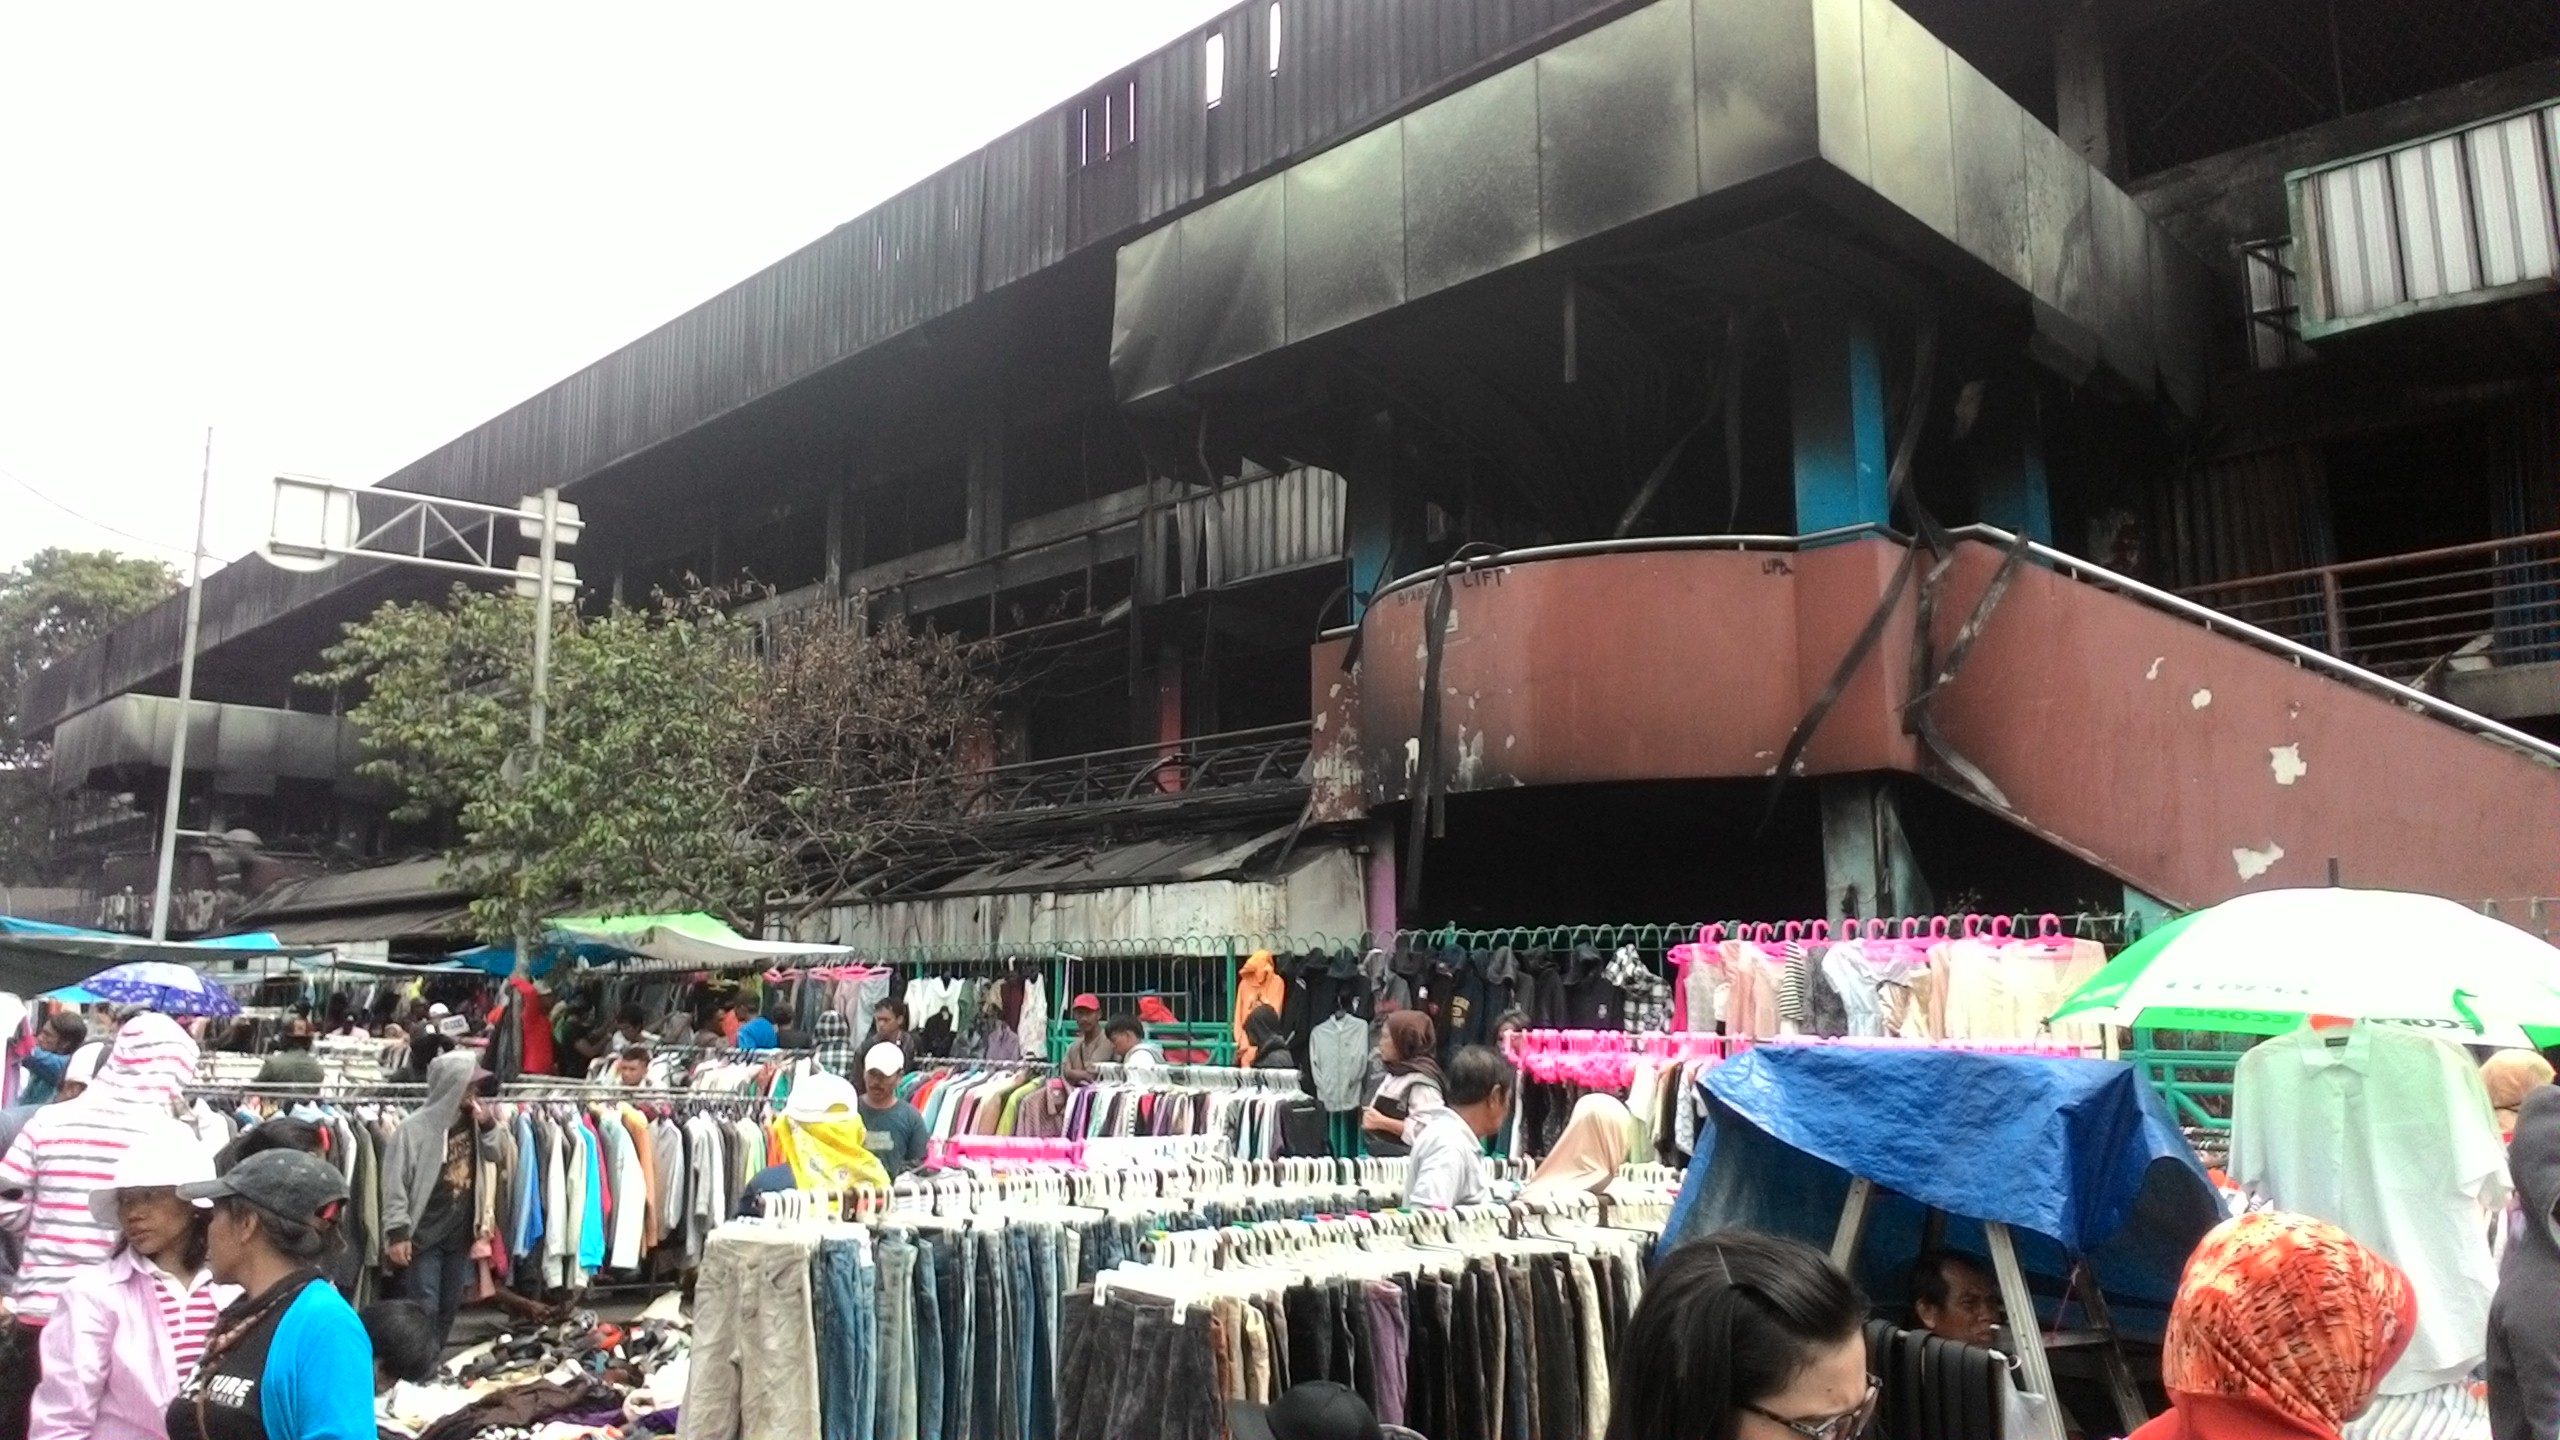 Pedagang Pasar Senen terpaksa menggunakan bahu jalan sebagai lapak dagangan karena kios mereka habis terbakar. Foto oleh Amru Sebayang/Rappler 